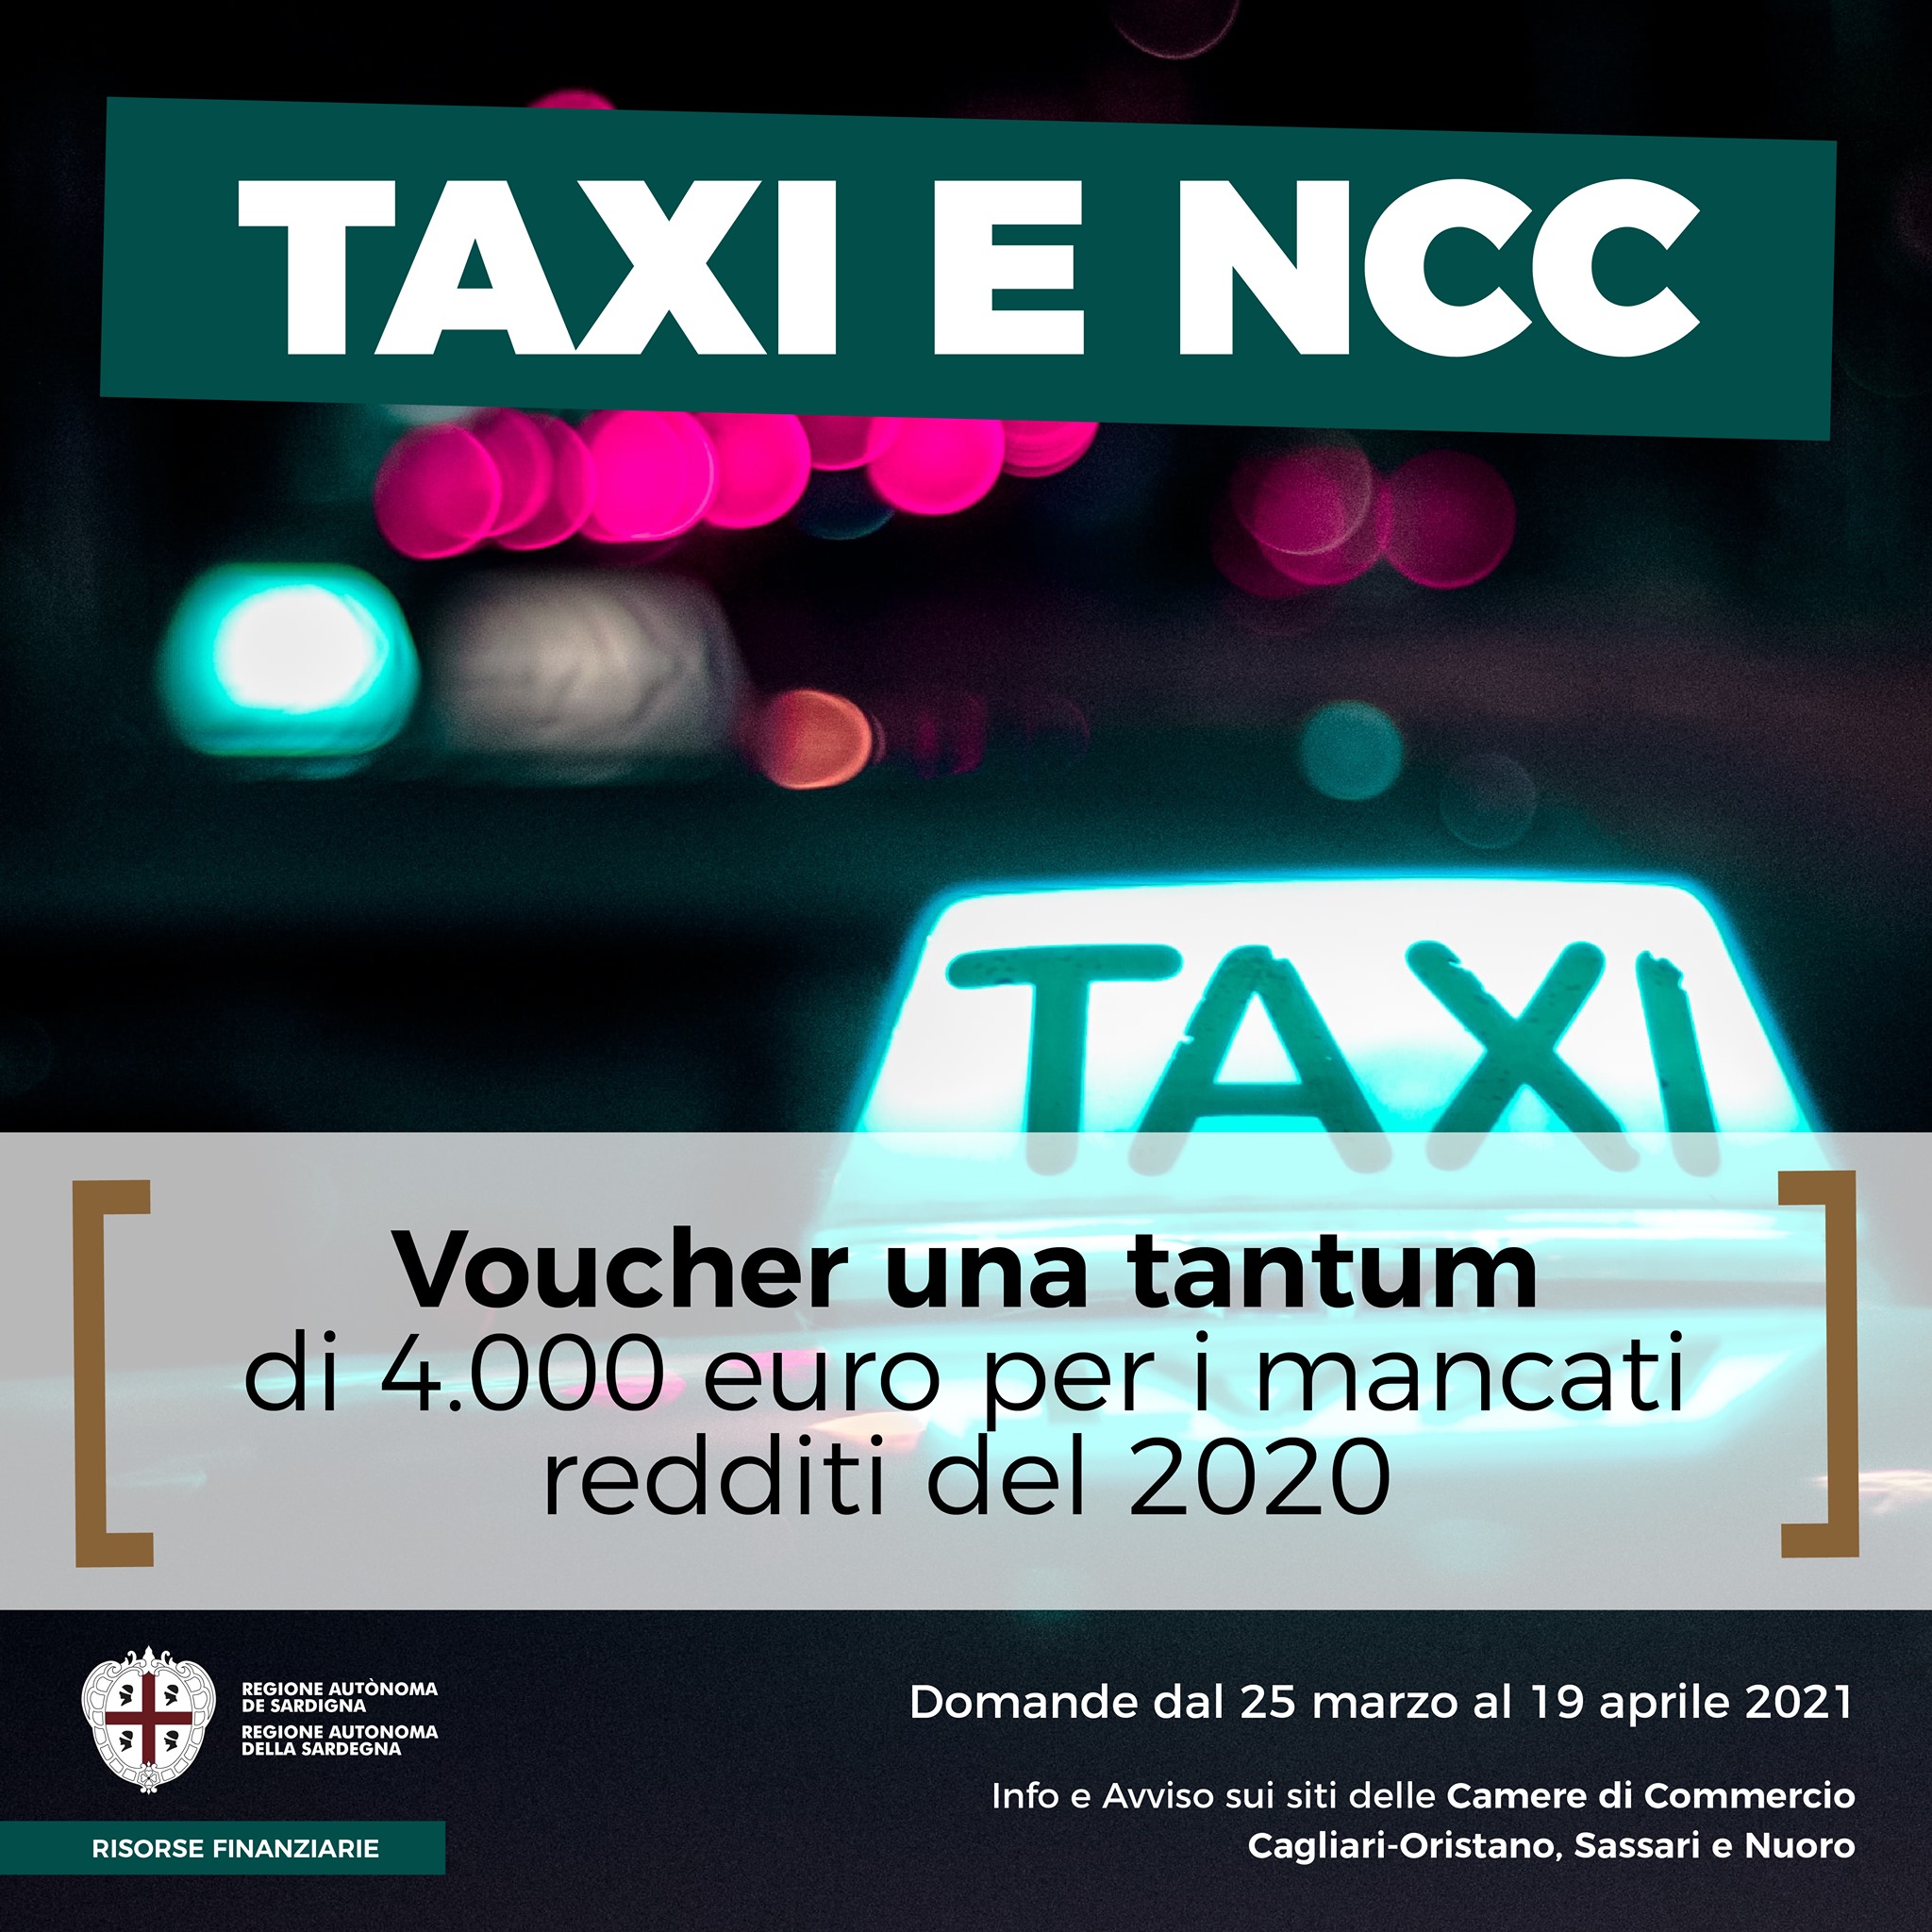 Taxi e NCC